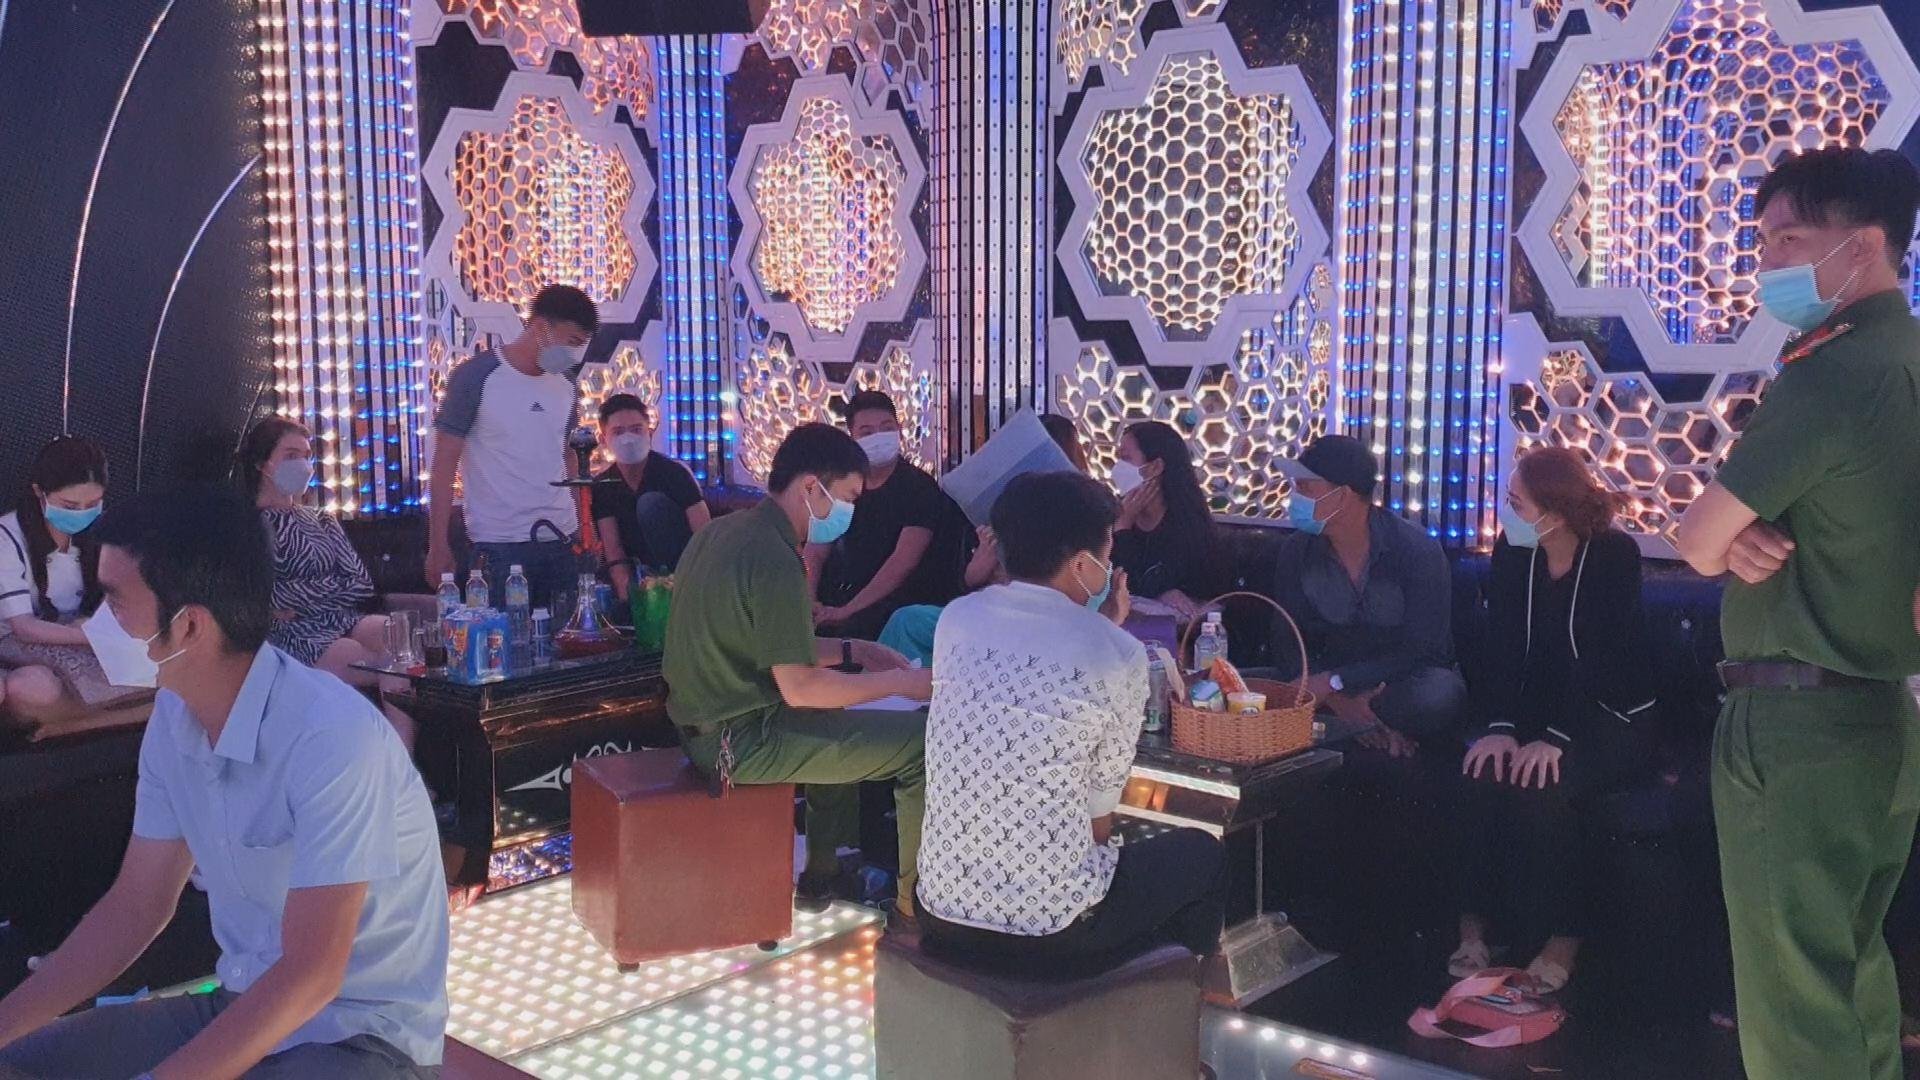 Bình Định: Phát hiện 40 thanh niên sử dụng ma túy trong quán karaoke Dragon - ảnh 1